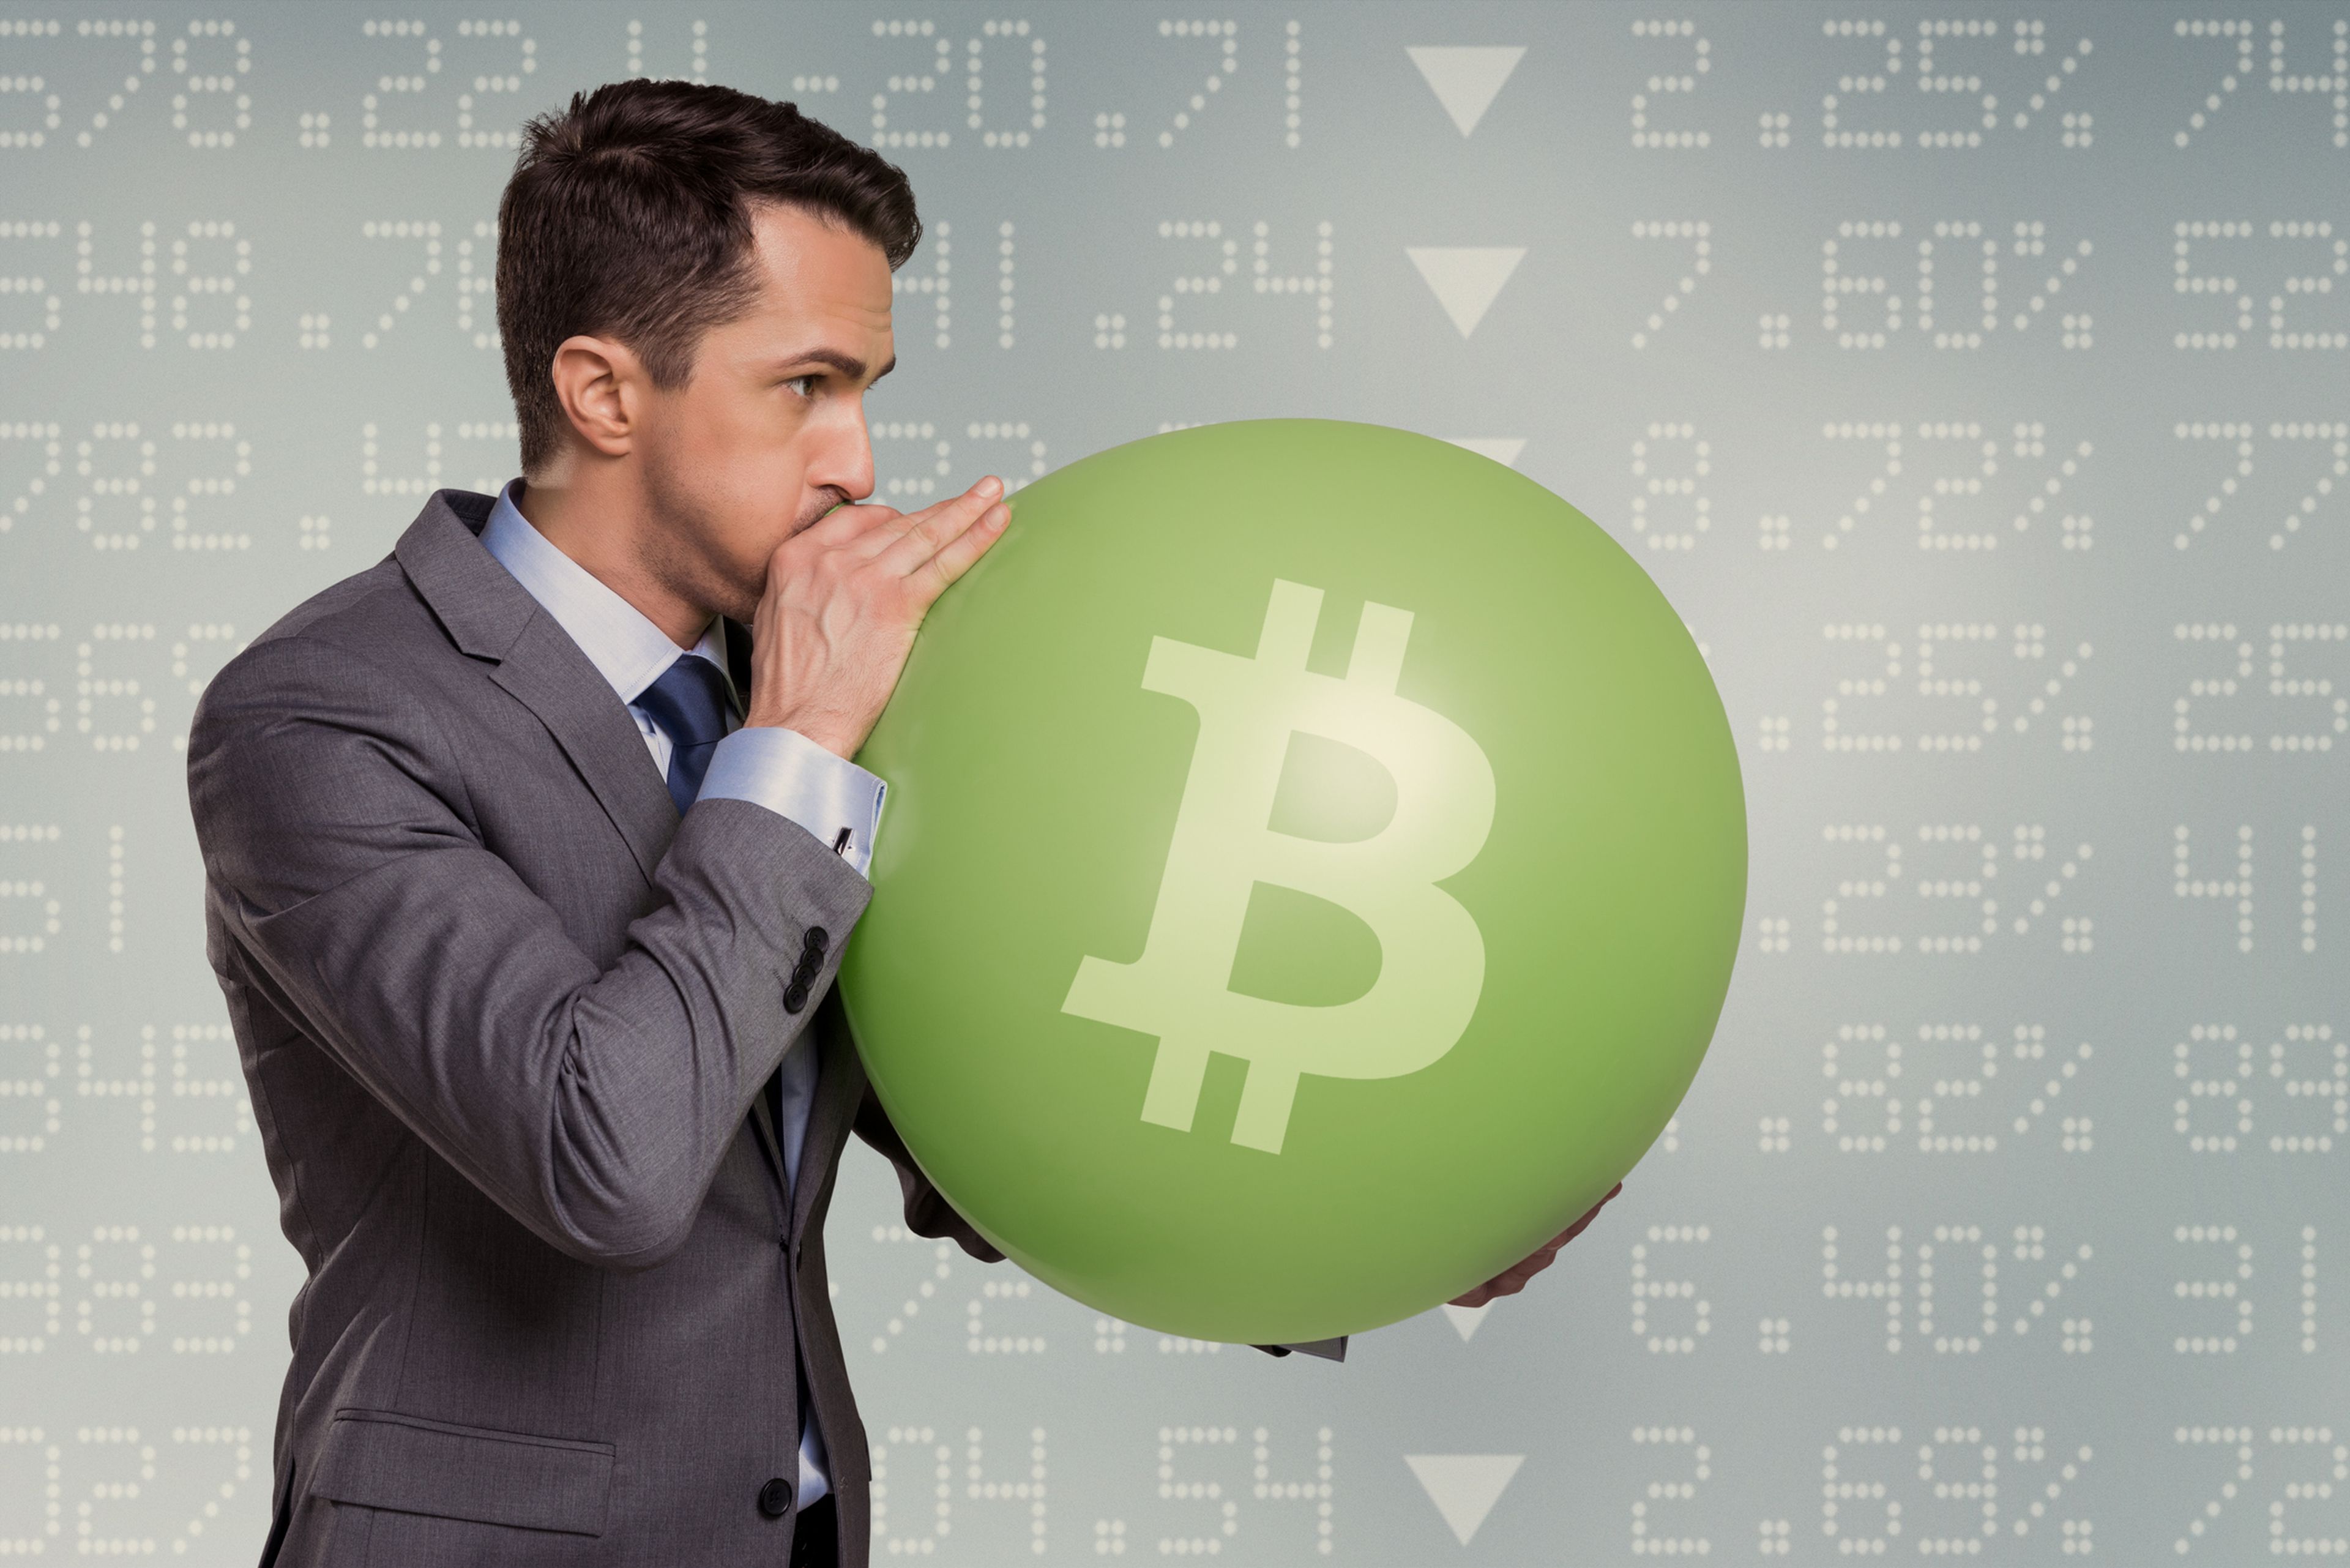 Una persona infla un globo con el símbolo de bitcoin.